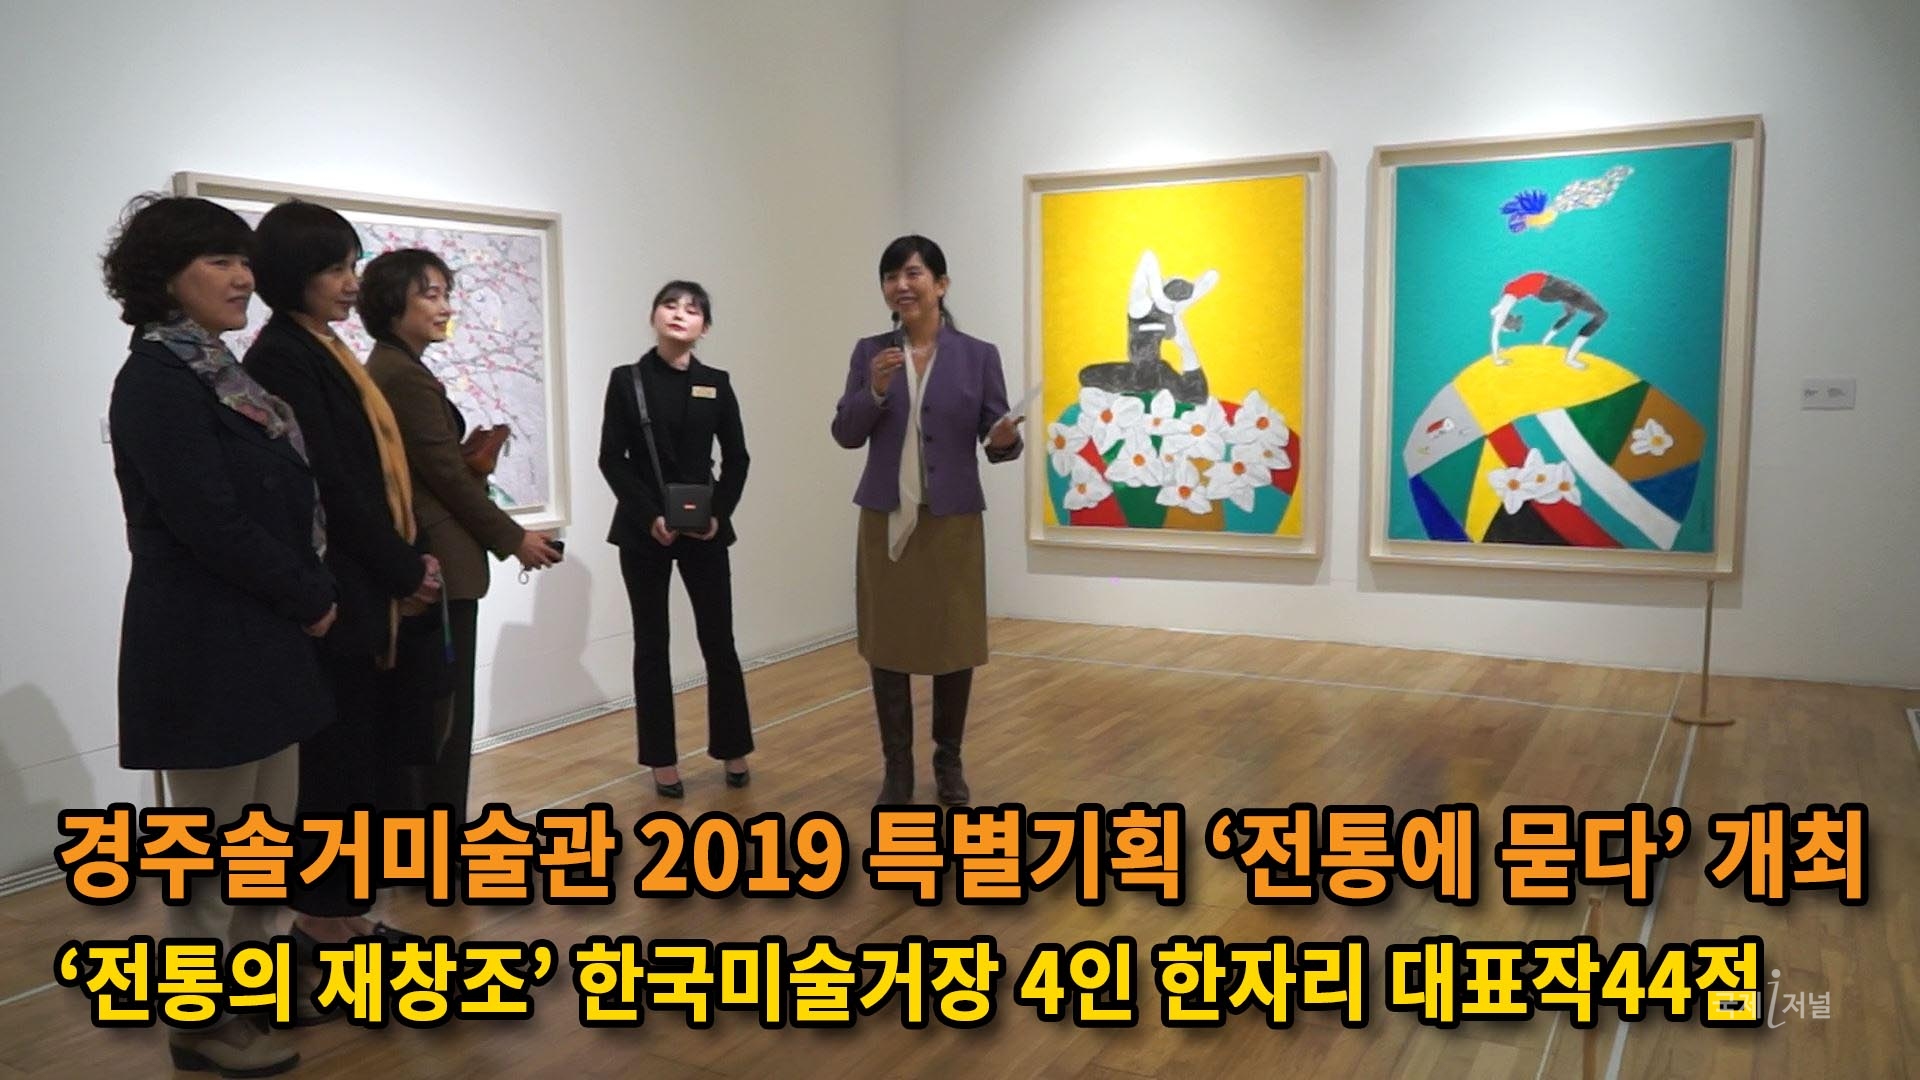 경주솔거미술관 2019 특별기획 ‘전통에 묻다’ 개최